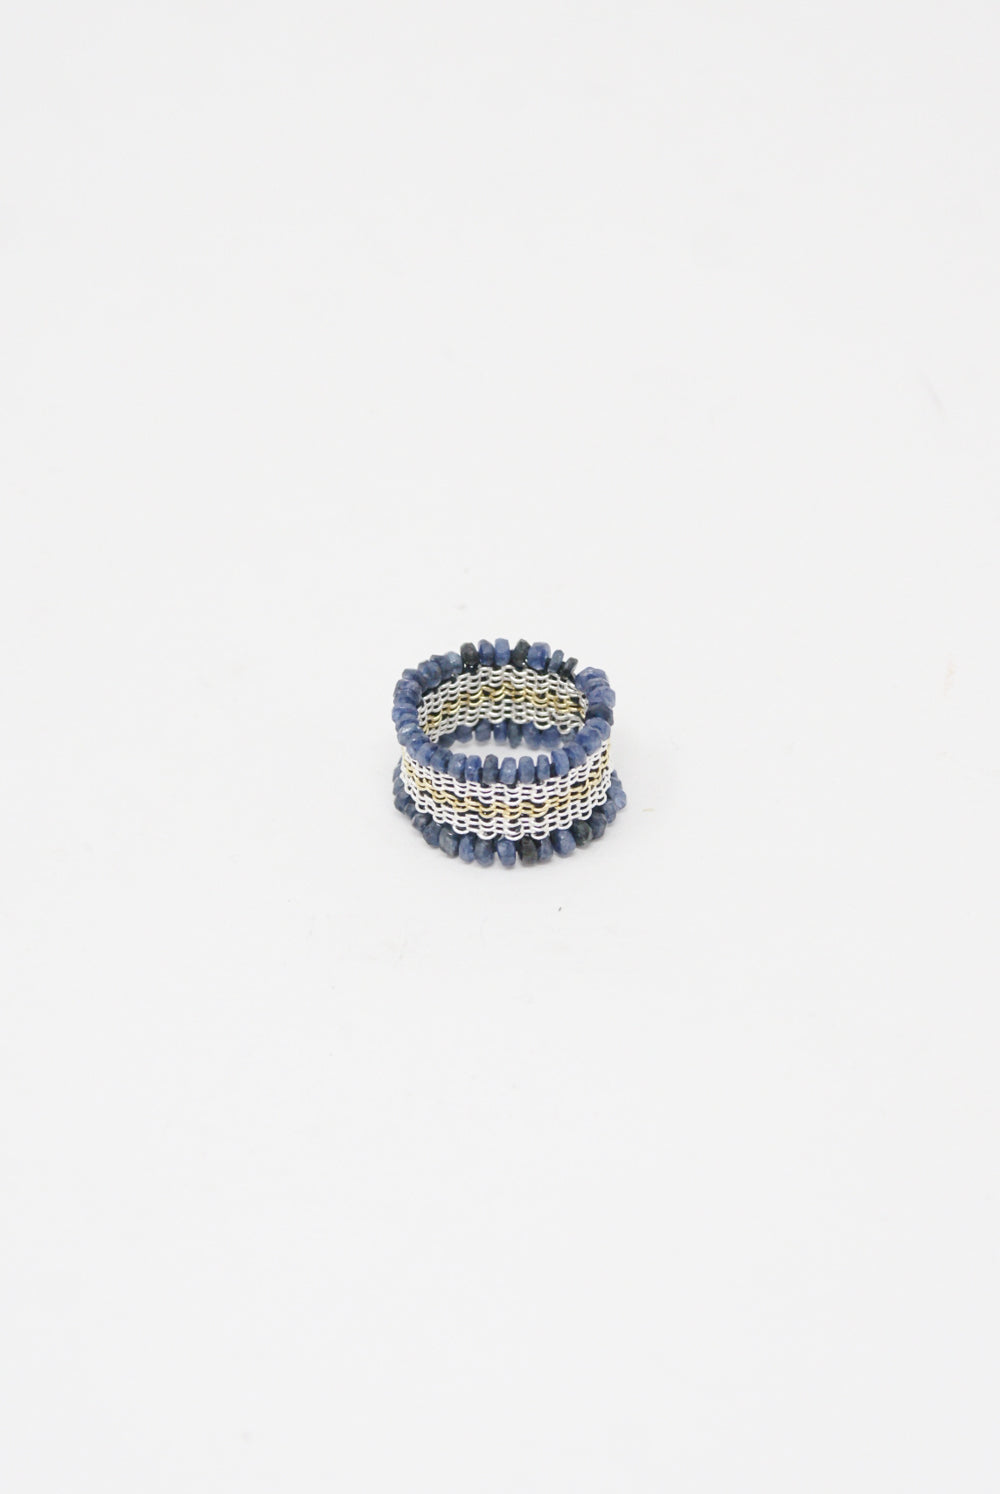 Stephanie Schneider Silver, Silk, Blue Sapphire Ring